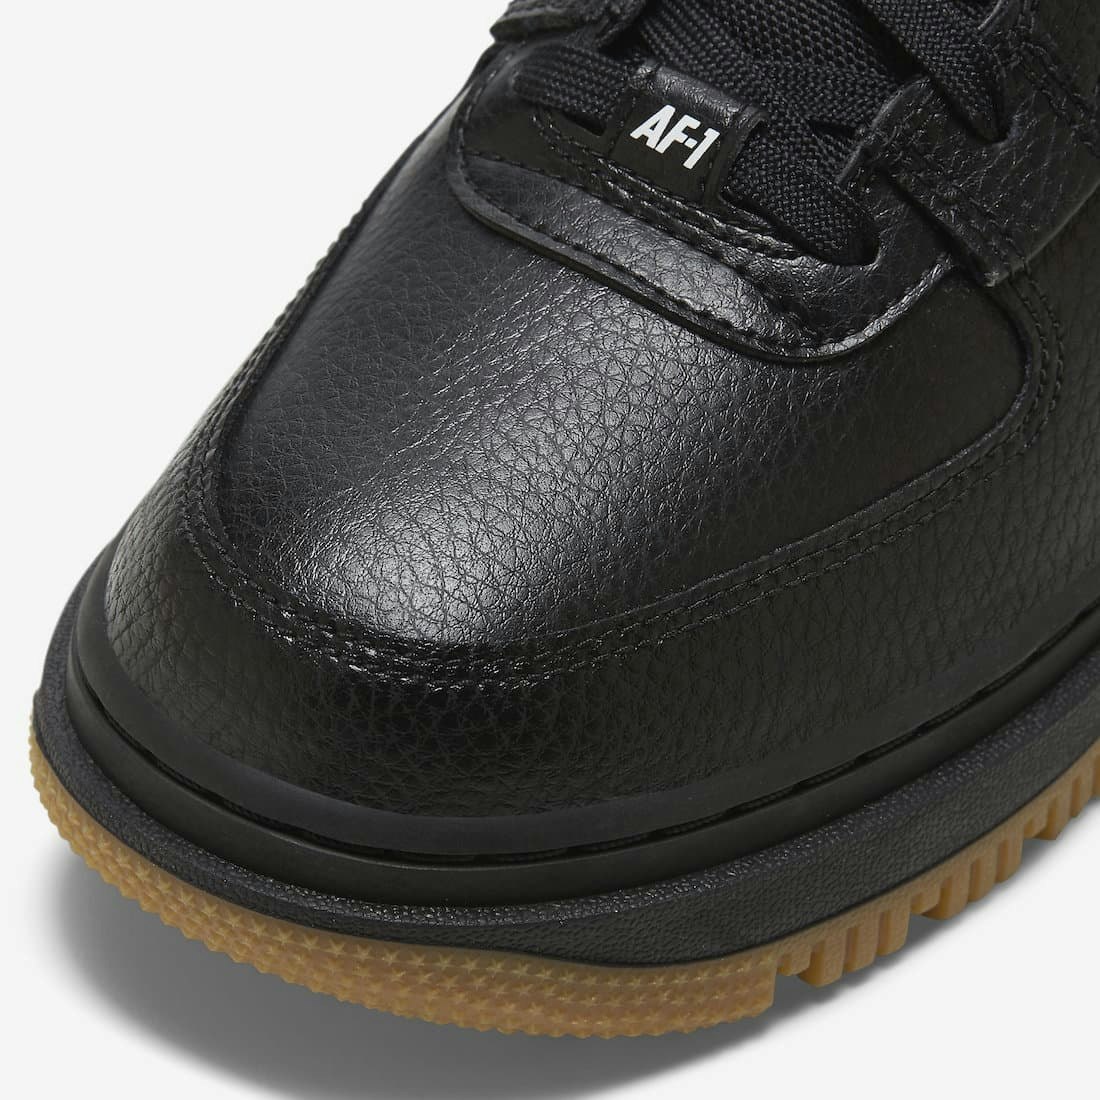 Nike Air Force 1 High Utility "Black Gum"